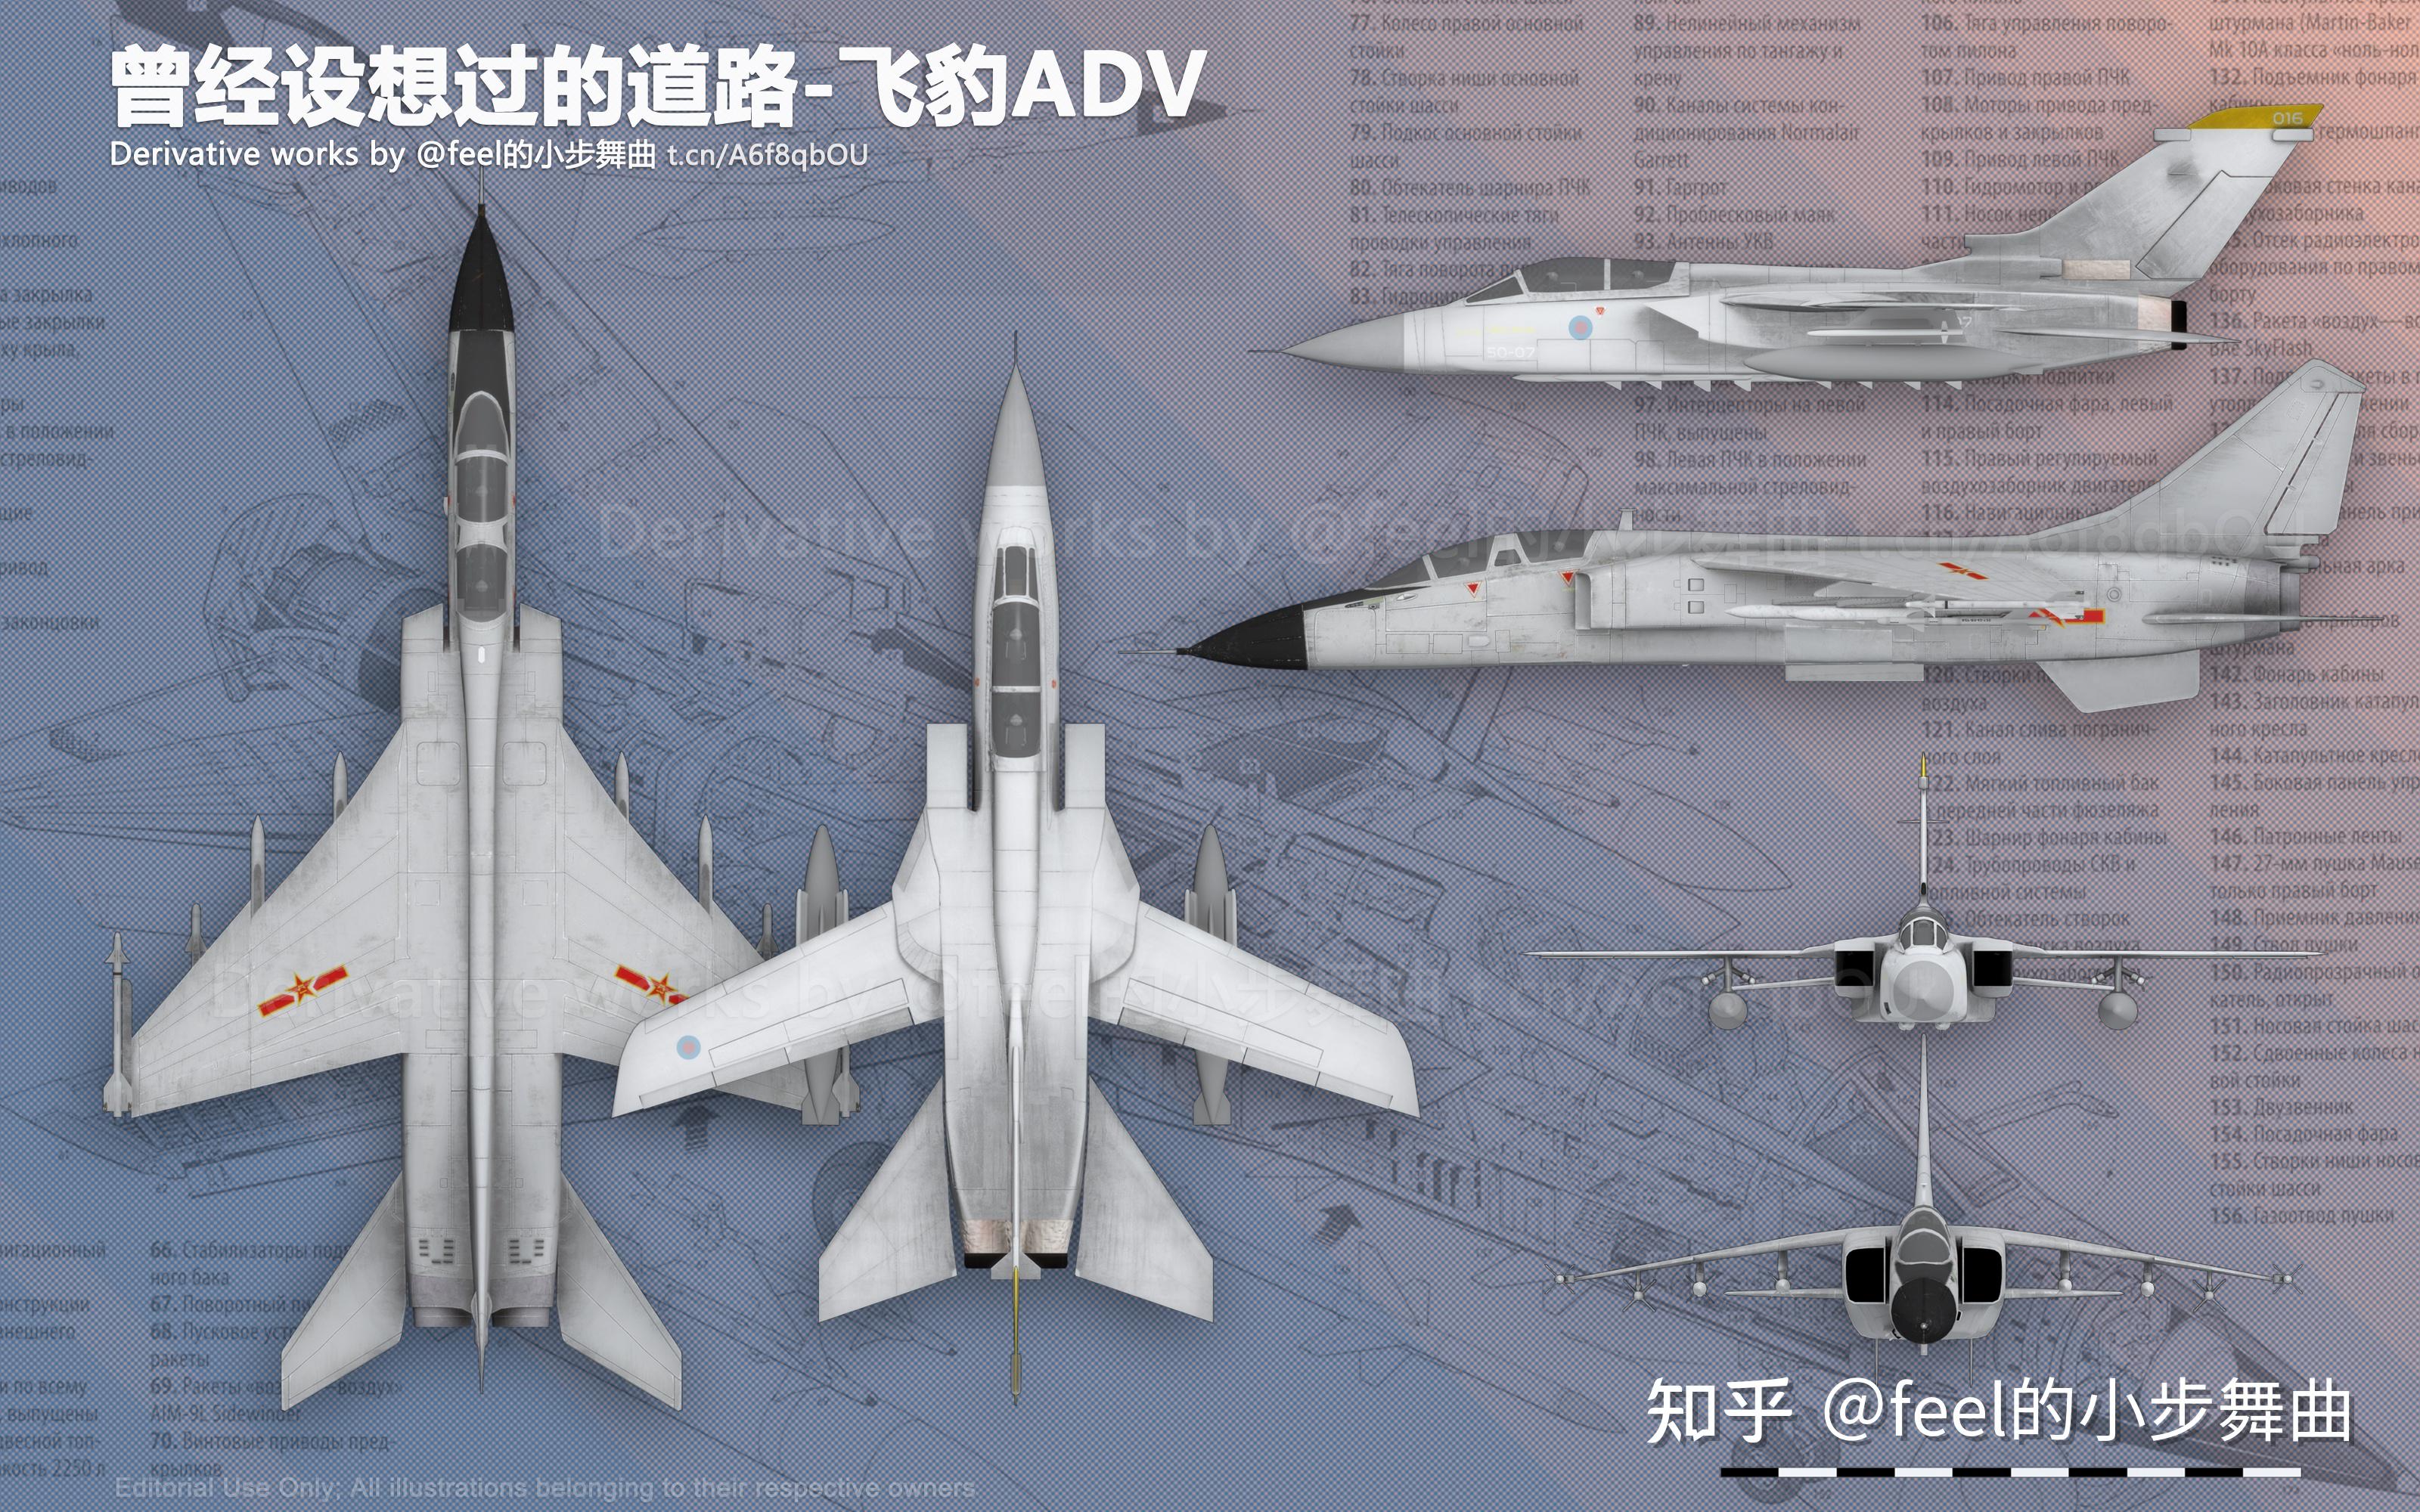 中国飞豹战机为何被称为三代机？歼16服役前它“兼职”最多